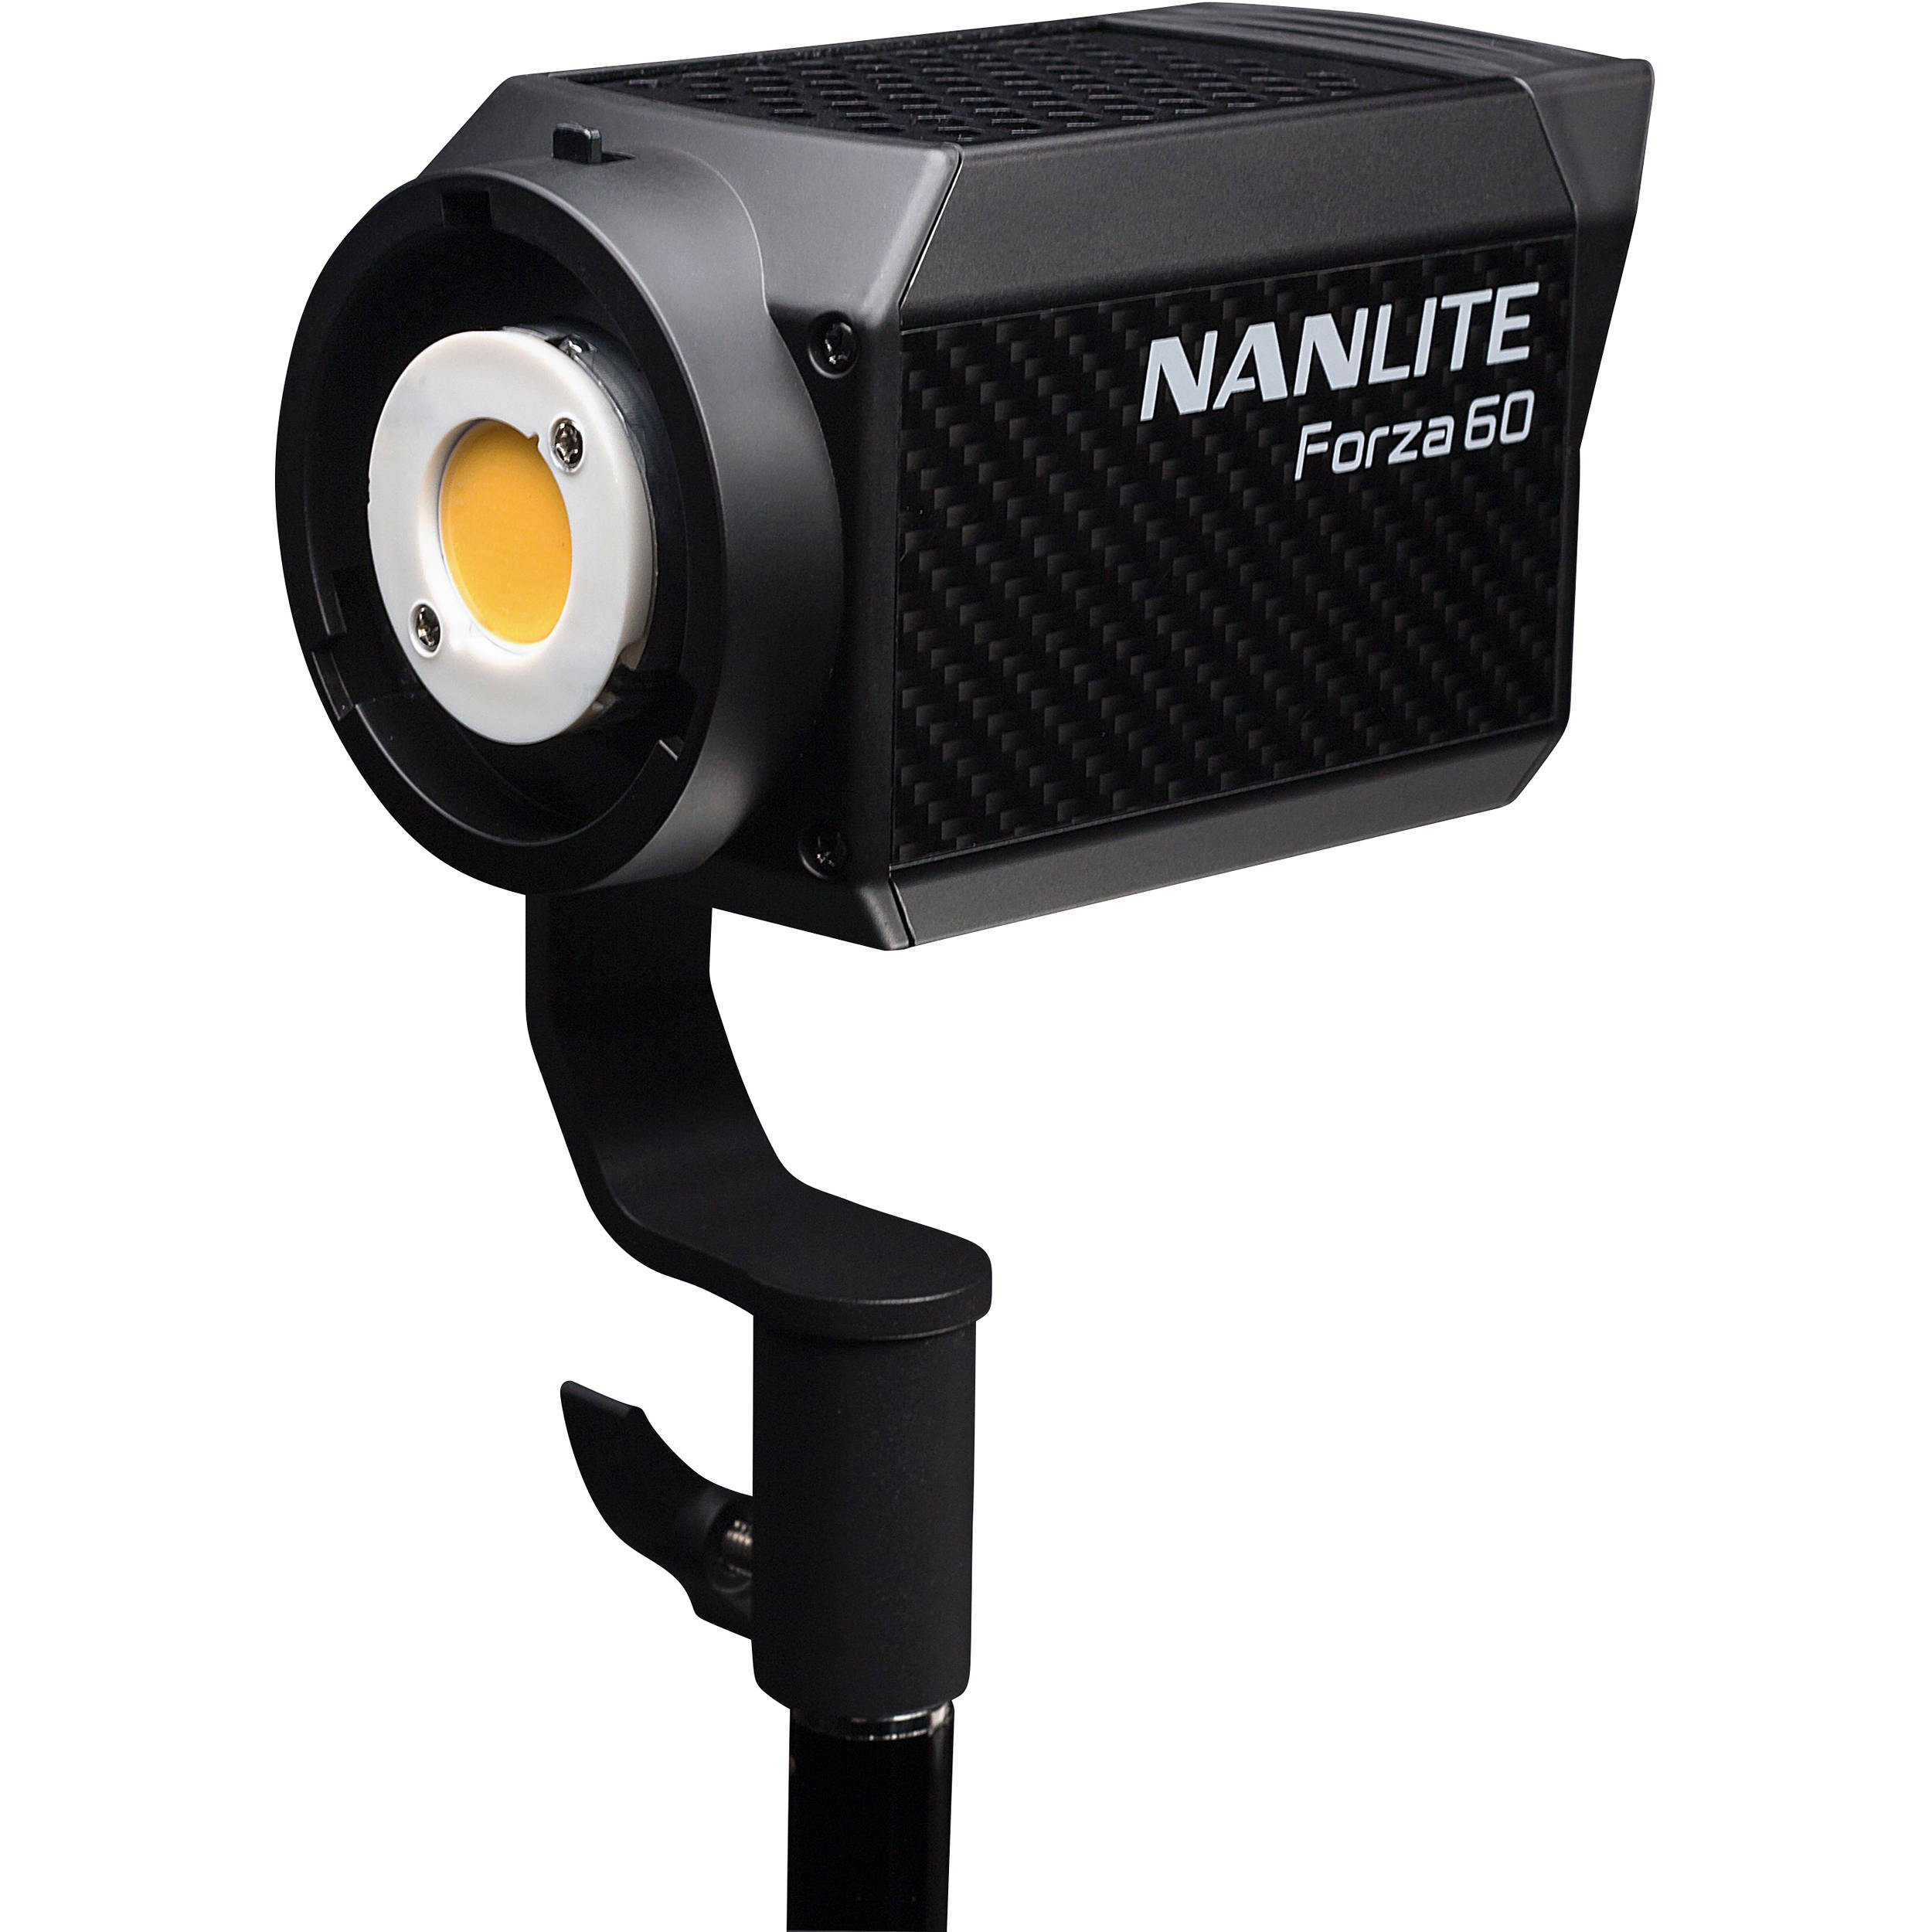 Đèn LED NanLite Forza 60 có thiết kế nhỏ gọn